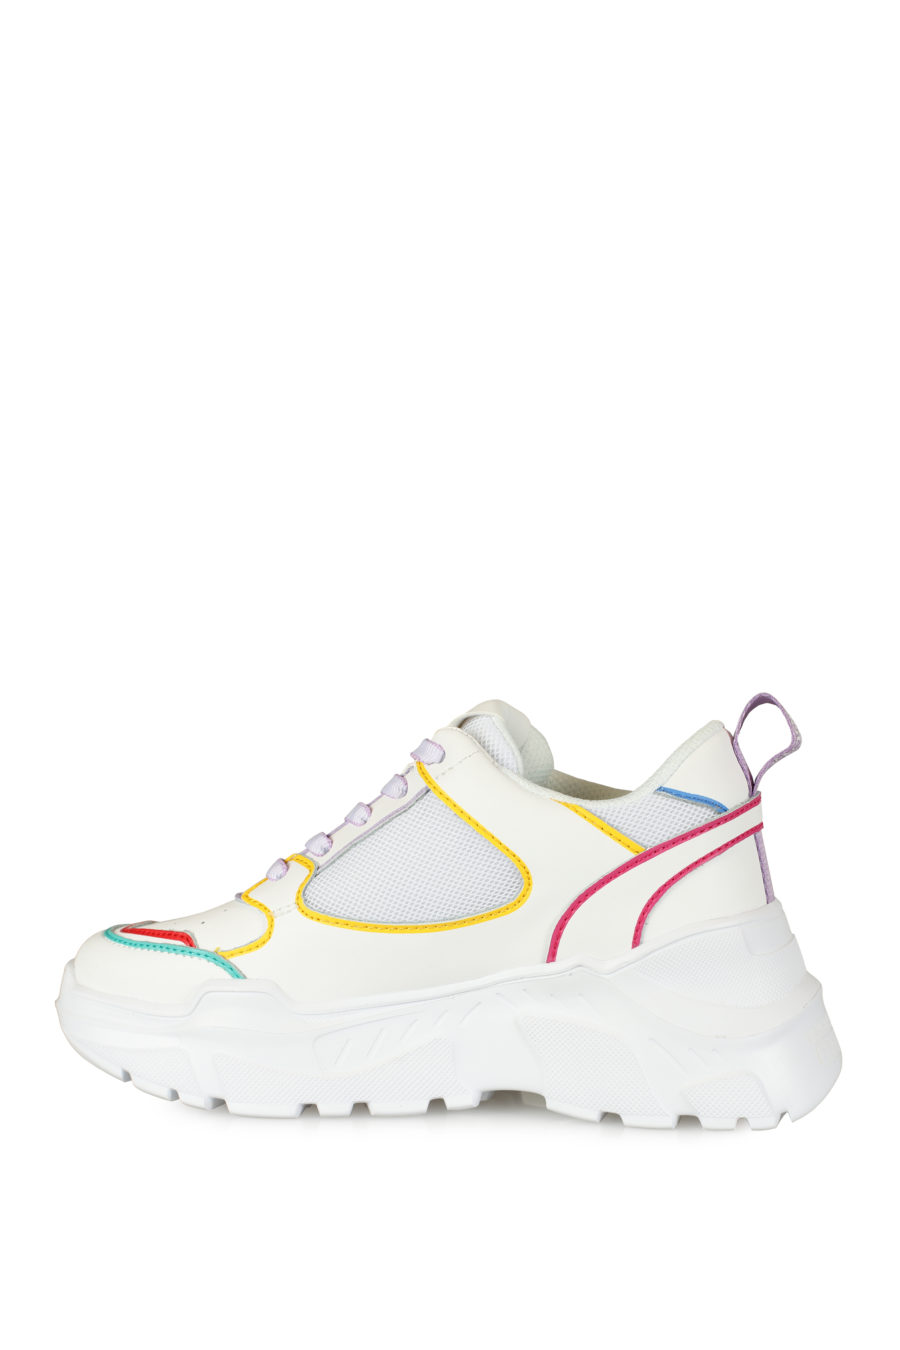 Zapatillas blancas con detalles de colores - IMG 3437